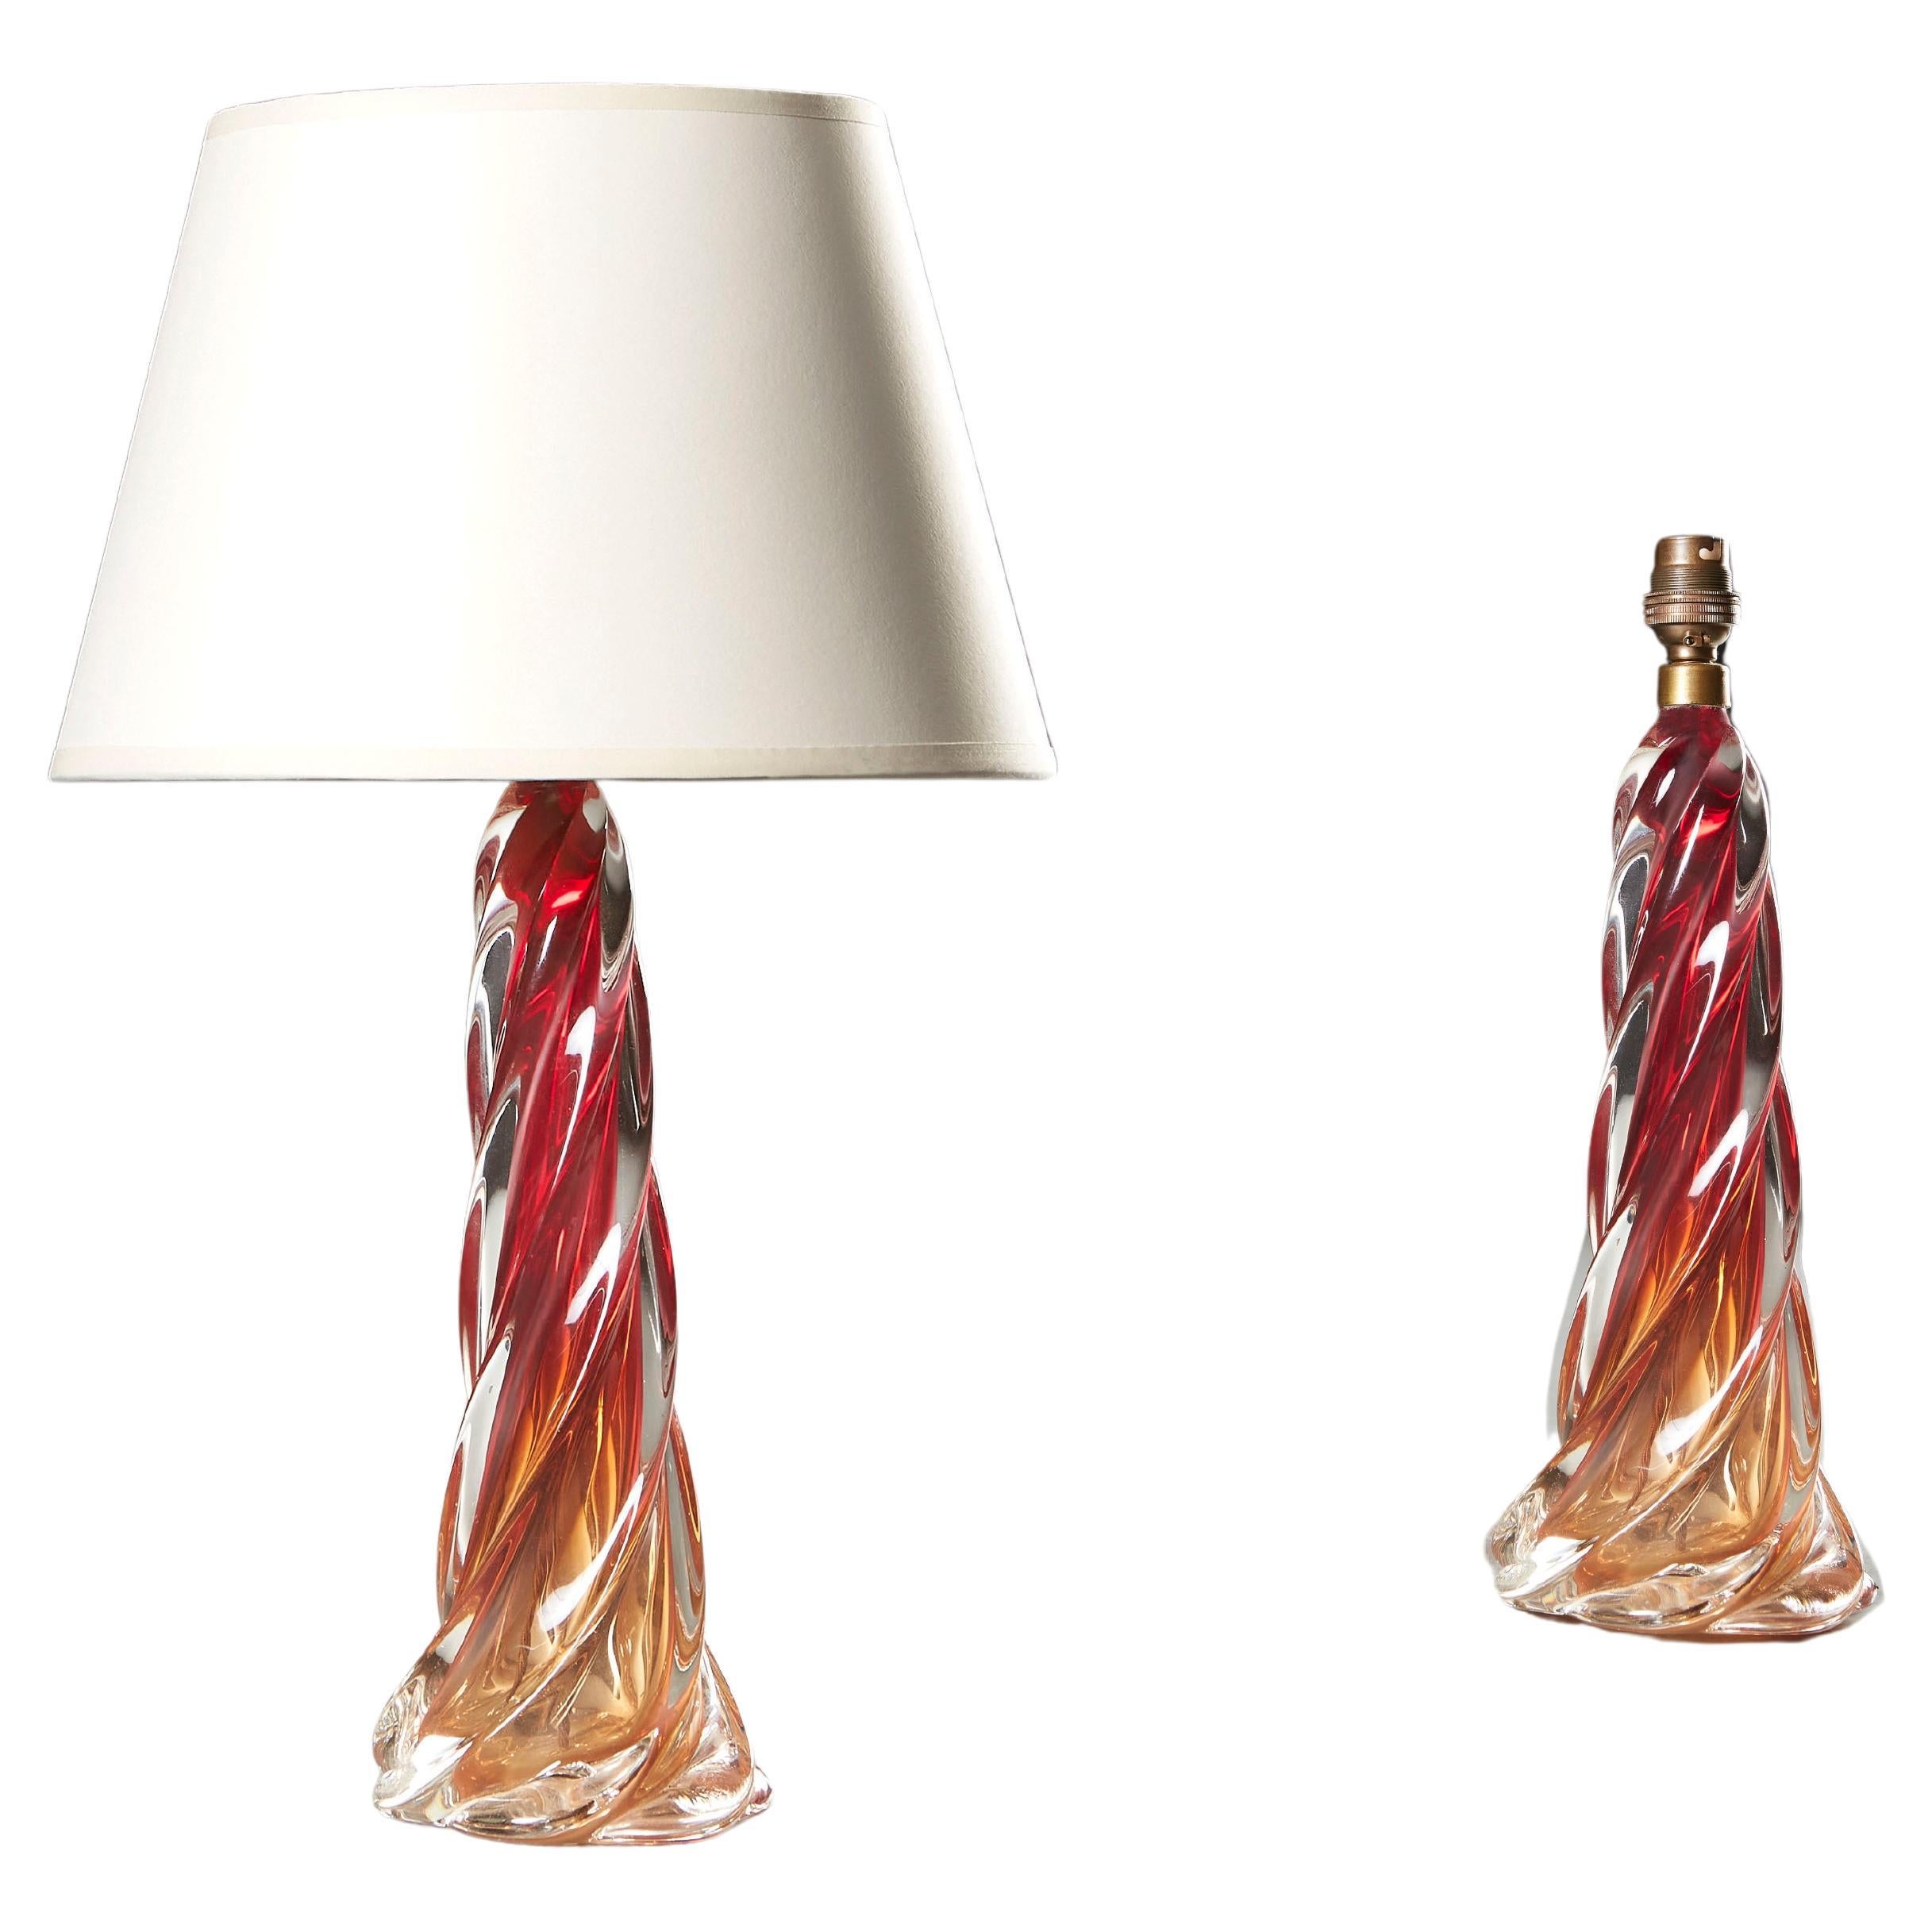 Paire assortie de lampes de table en verre de Murano rouge en spirale